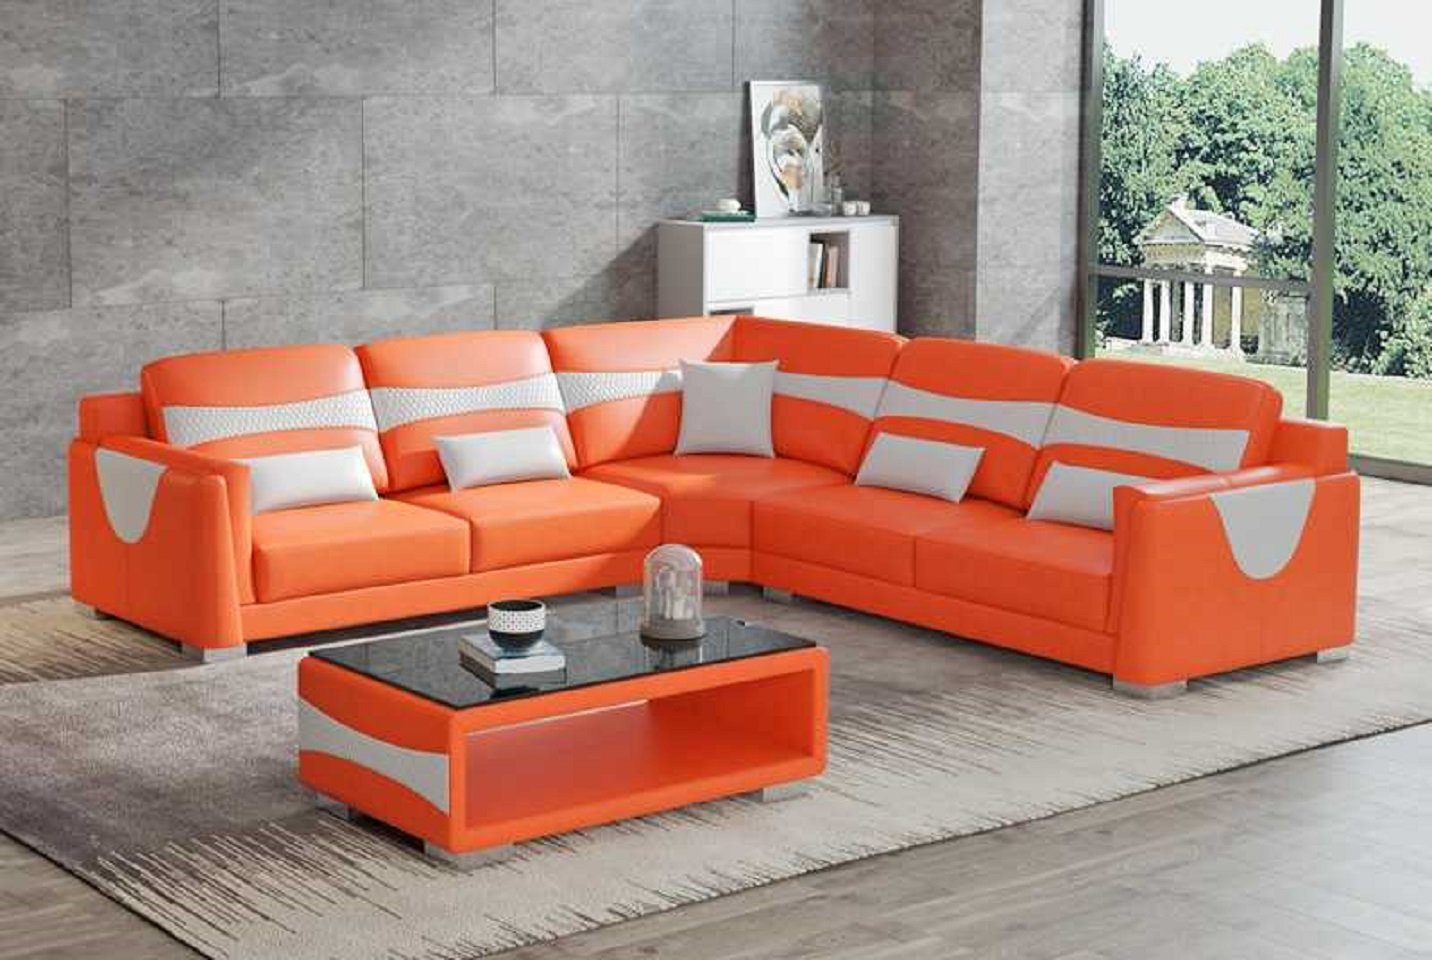 JVmoebel Ecksofa Design Eckgarnitur Ledersofa Ecksofa L Form Couch Kunstleder Sofa, 3 Teile, Made in Europe Orange